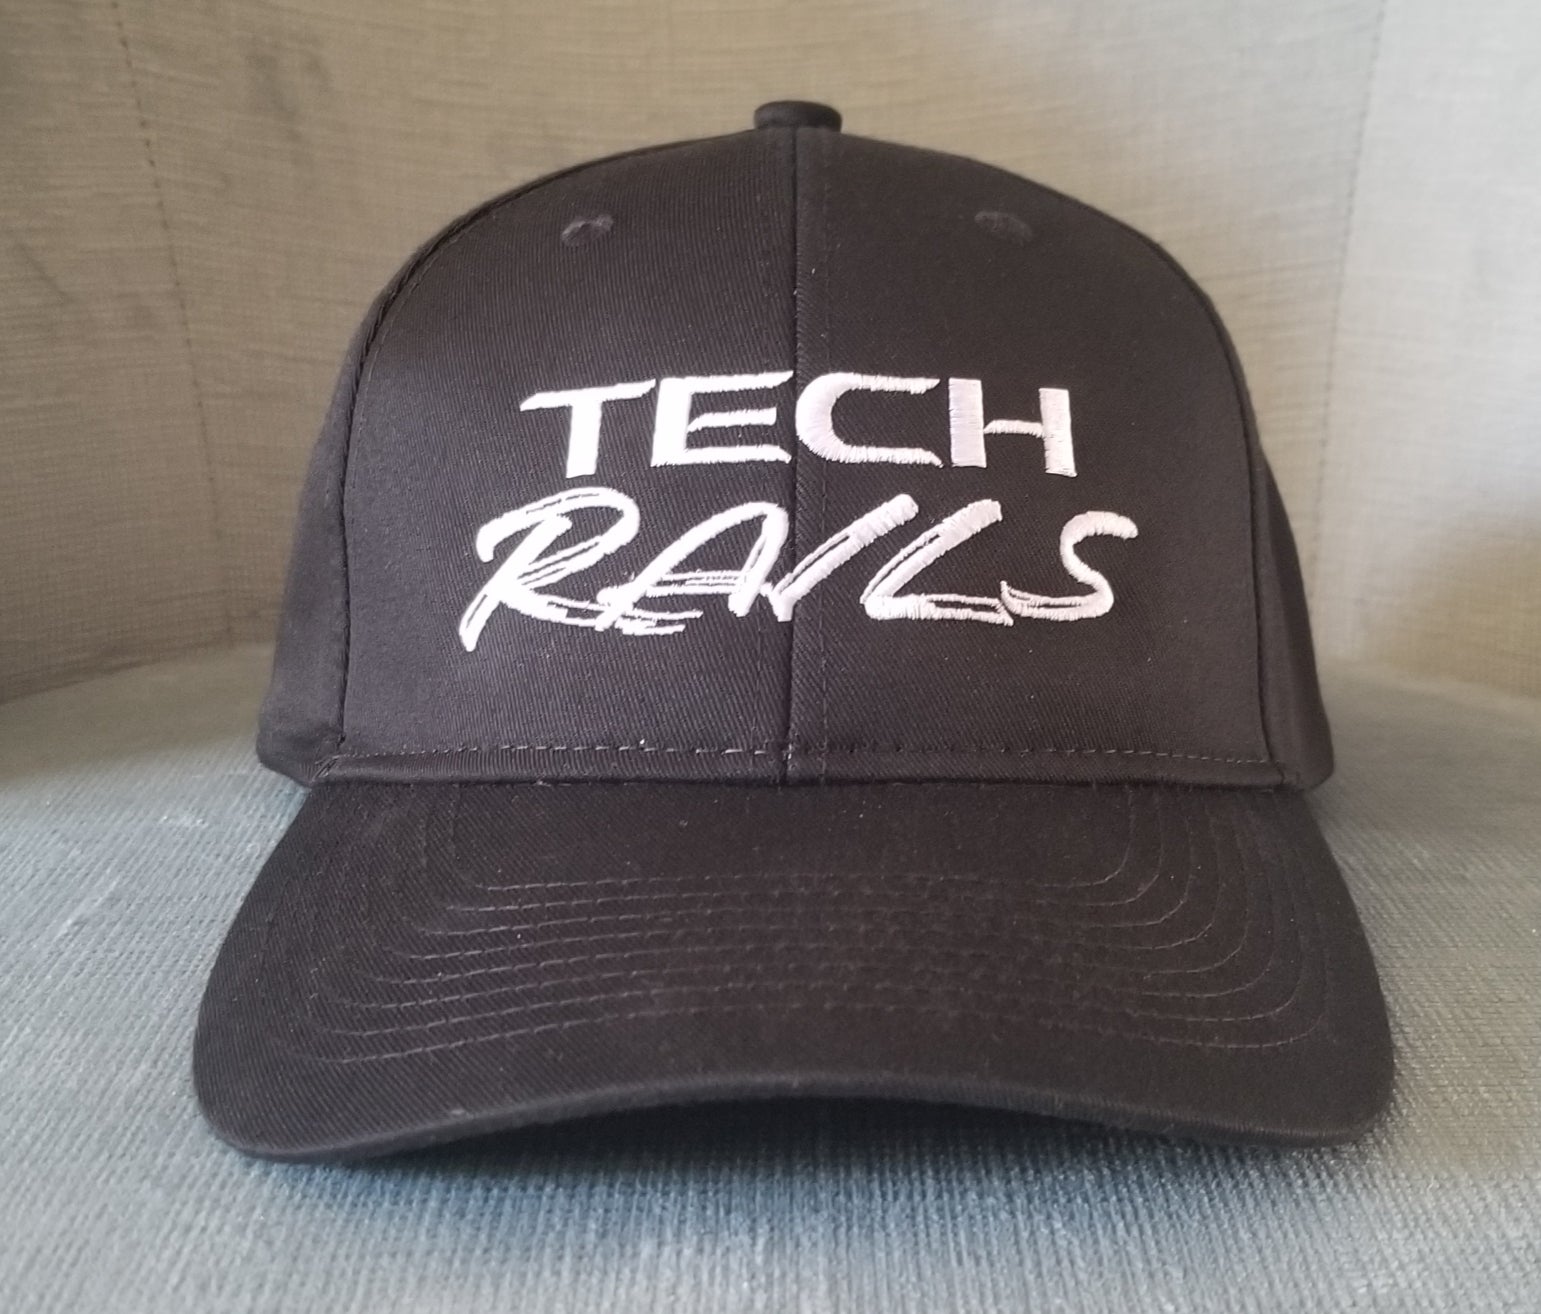 Tech-Rails hat